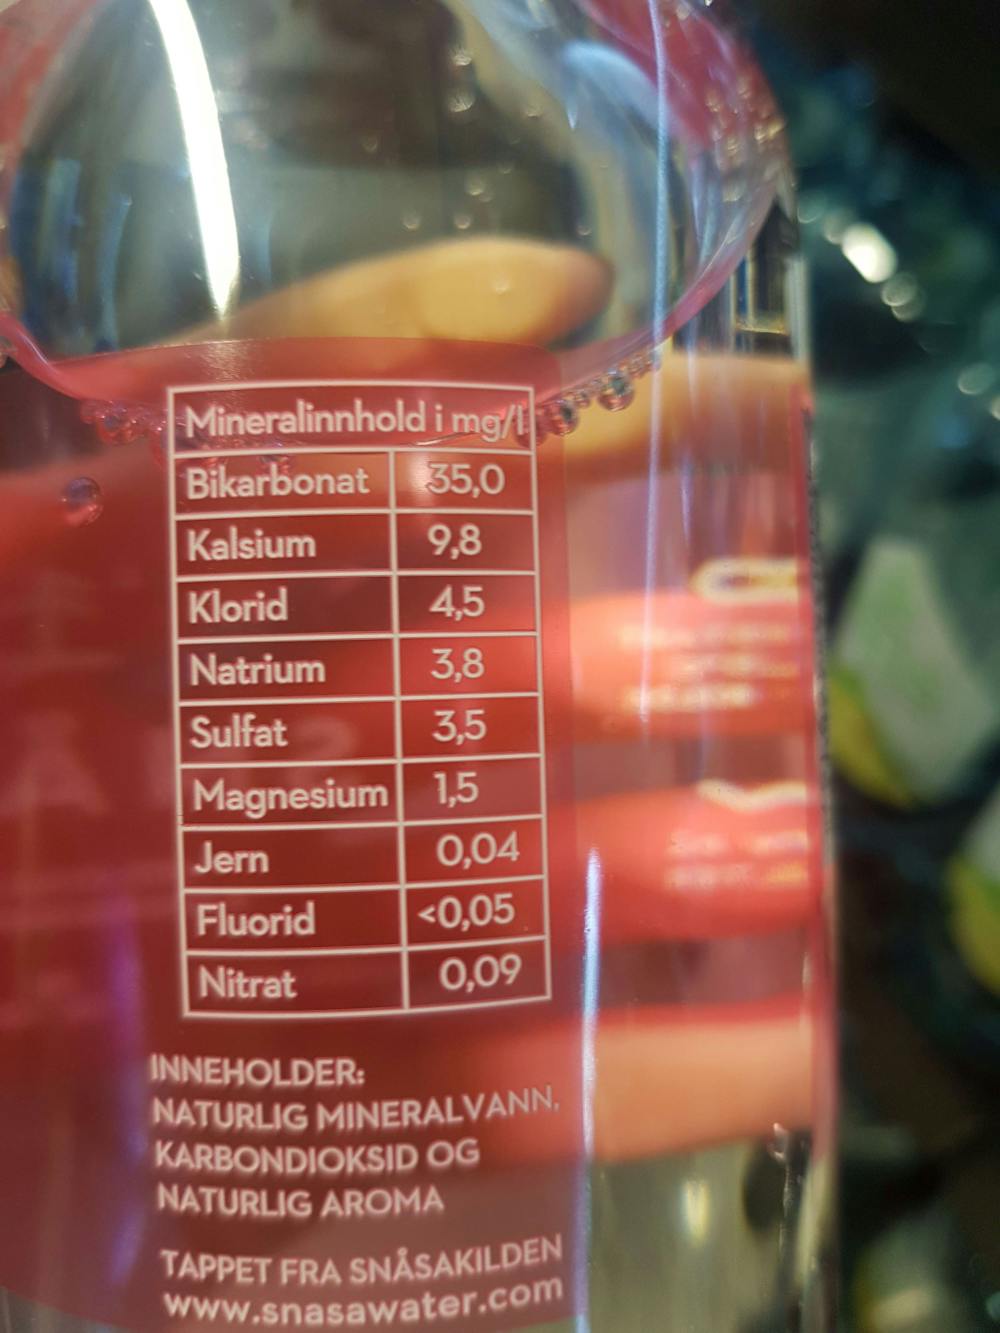 Ingredienslisten til Snåsa med kullsyre & bringebærsmak, Snåsa